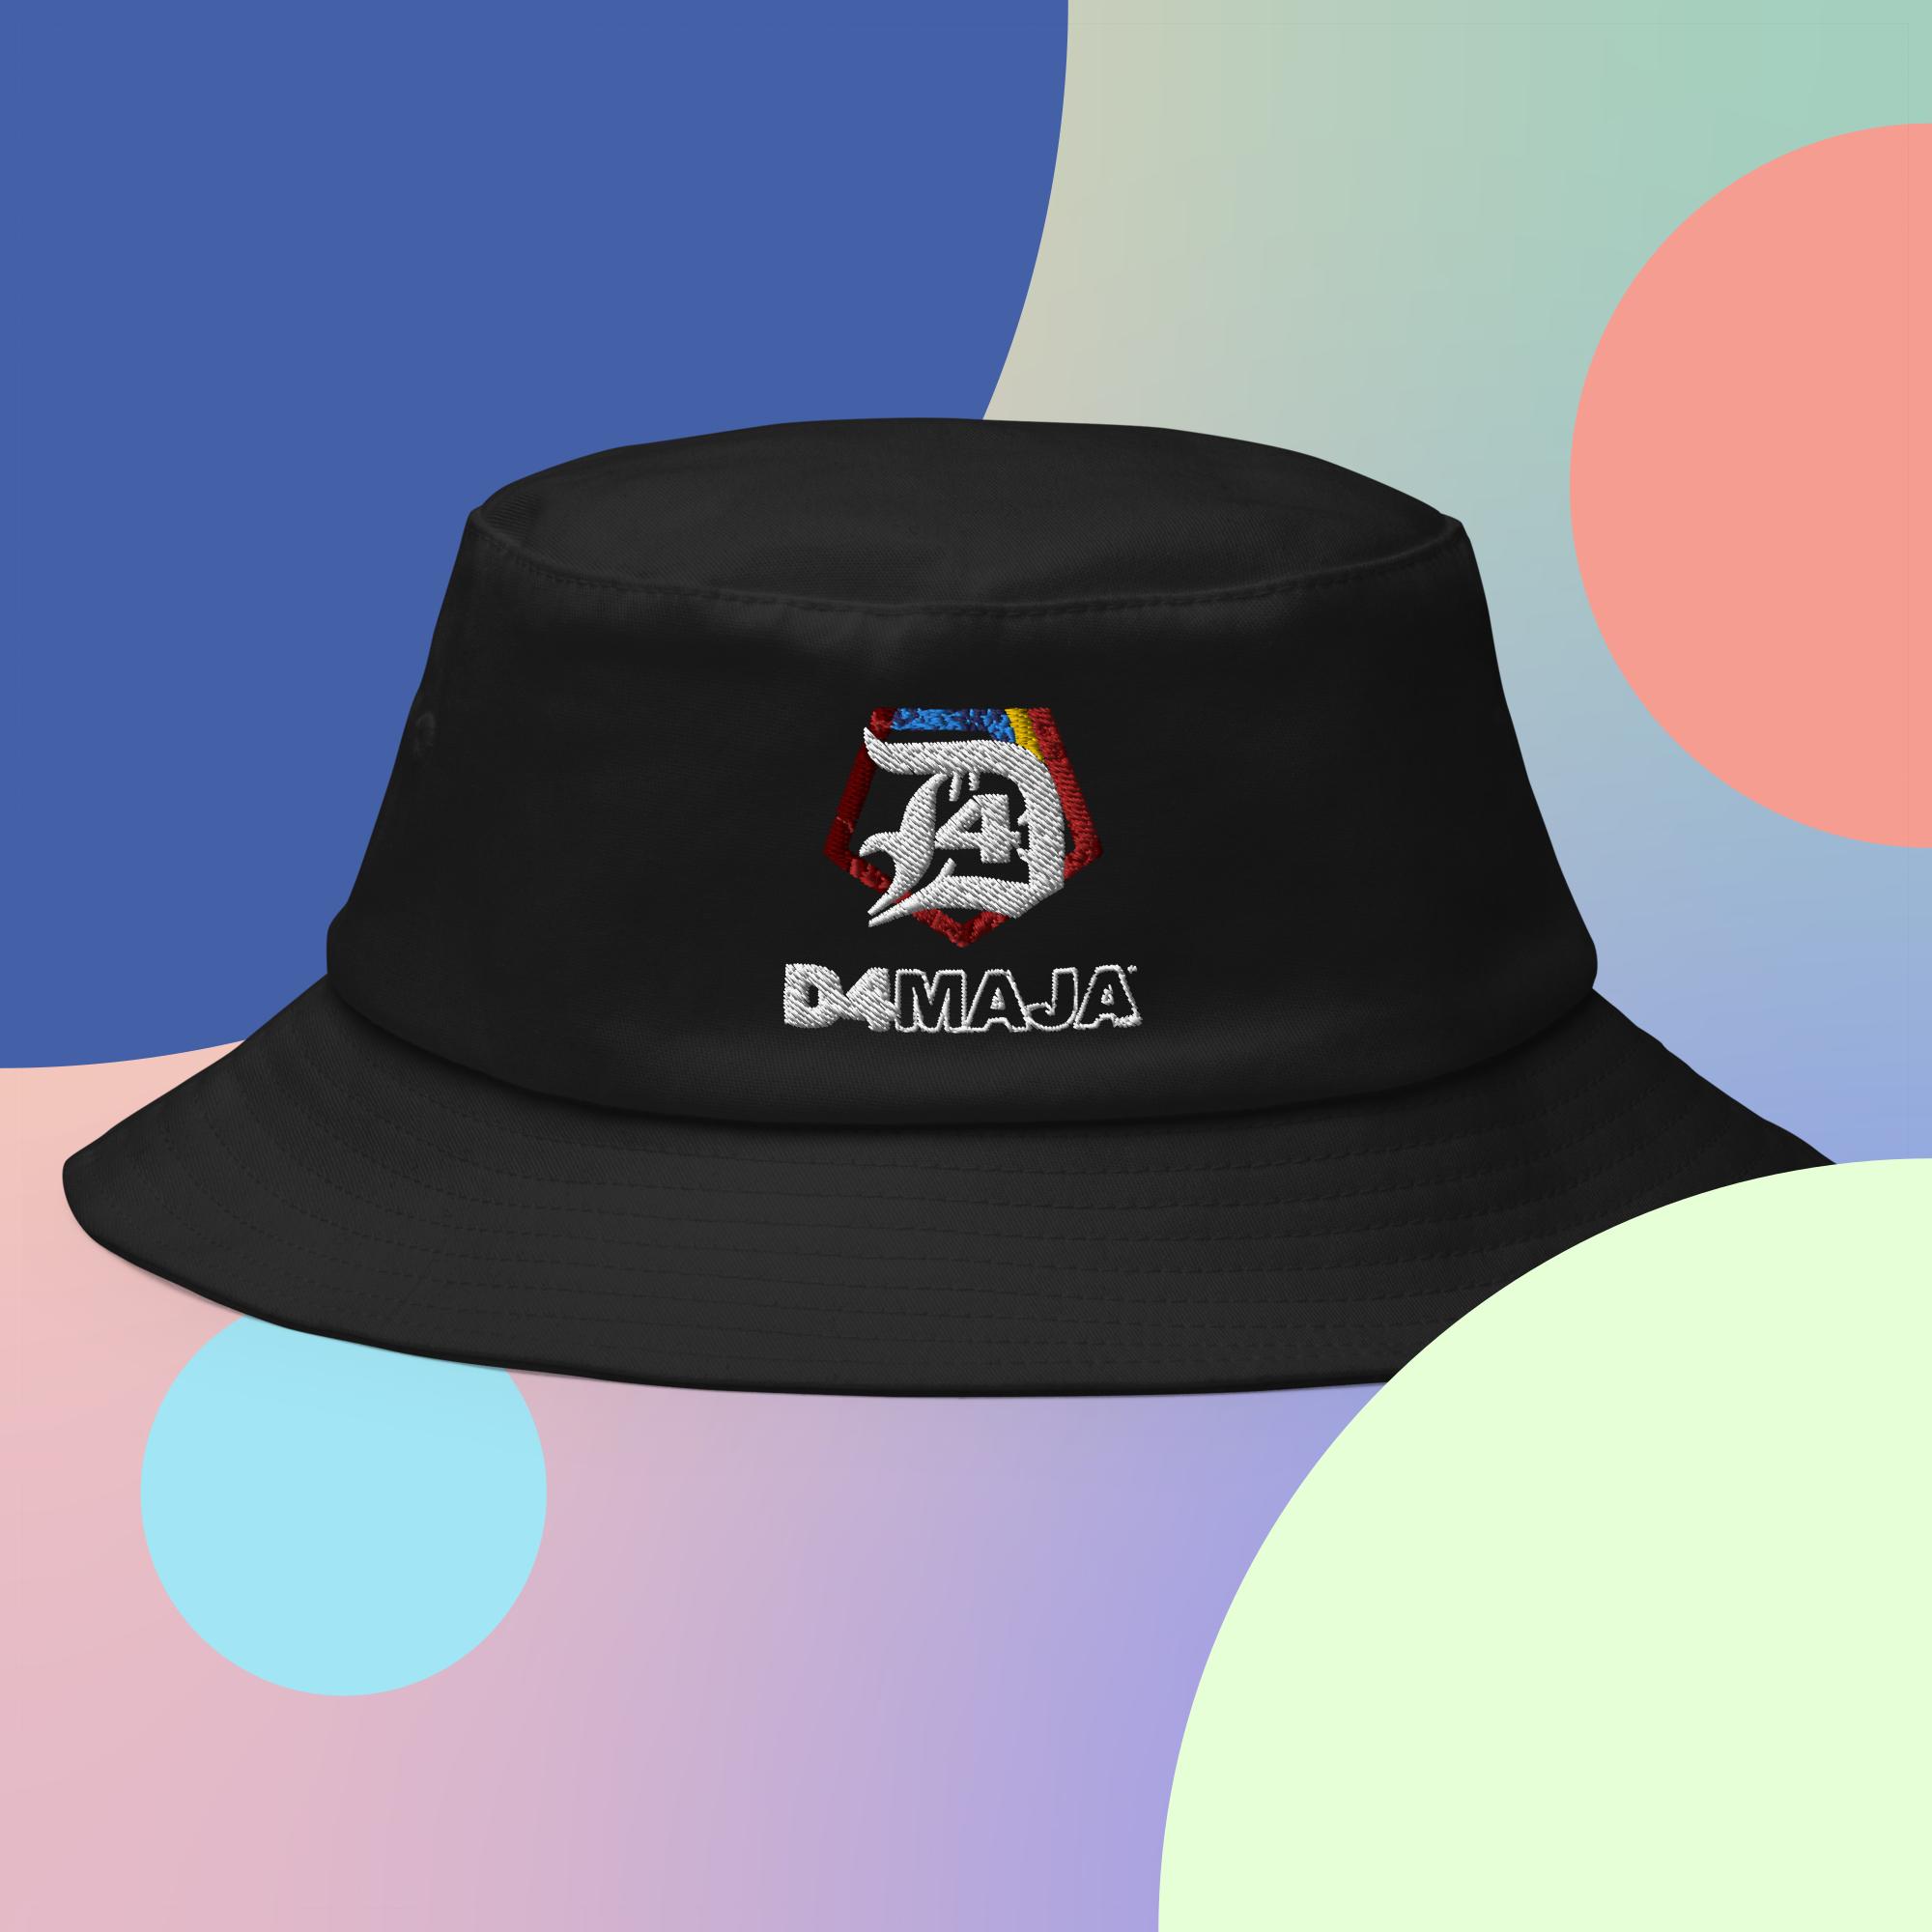 Black bucket hat and blue windbreaker